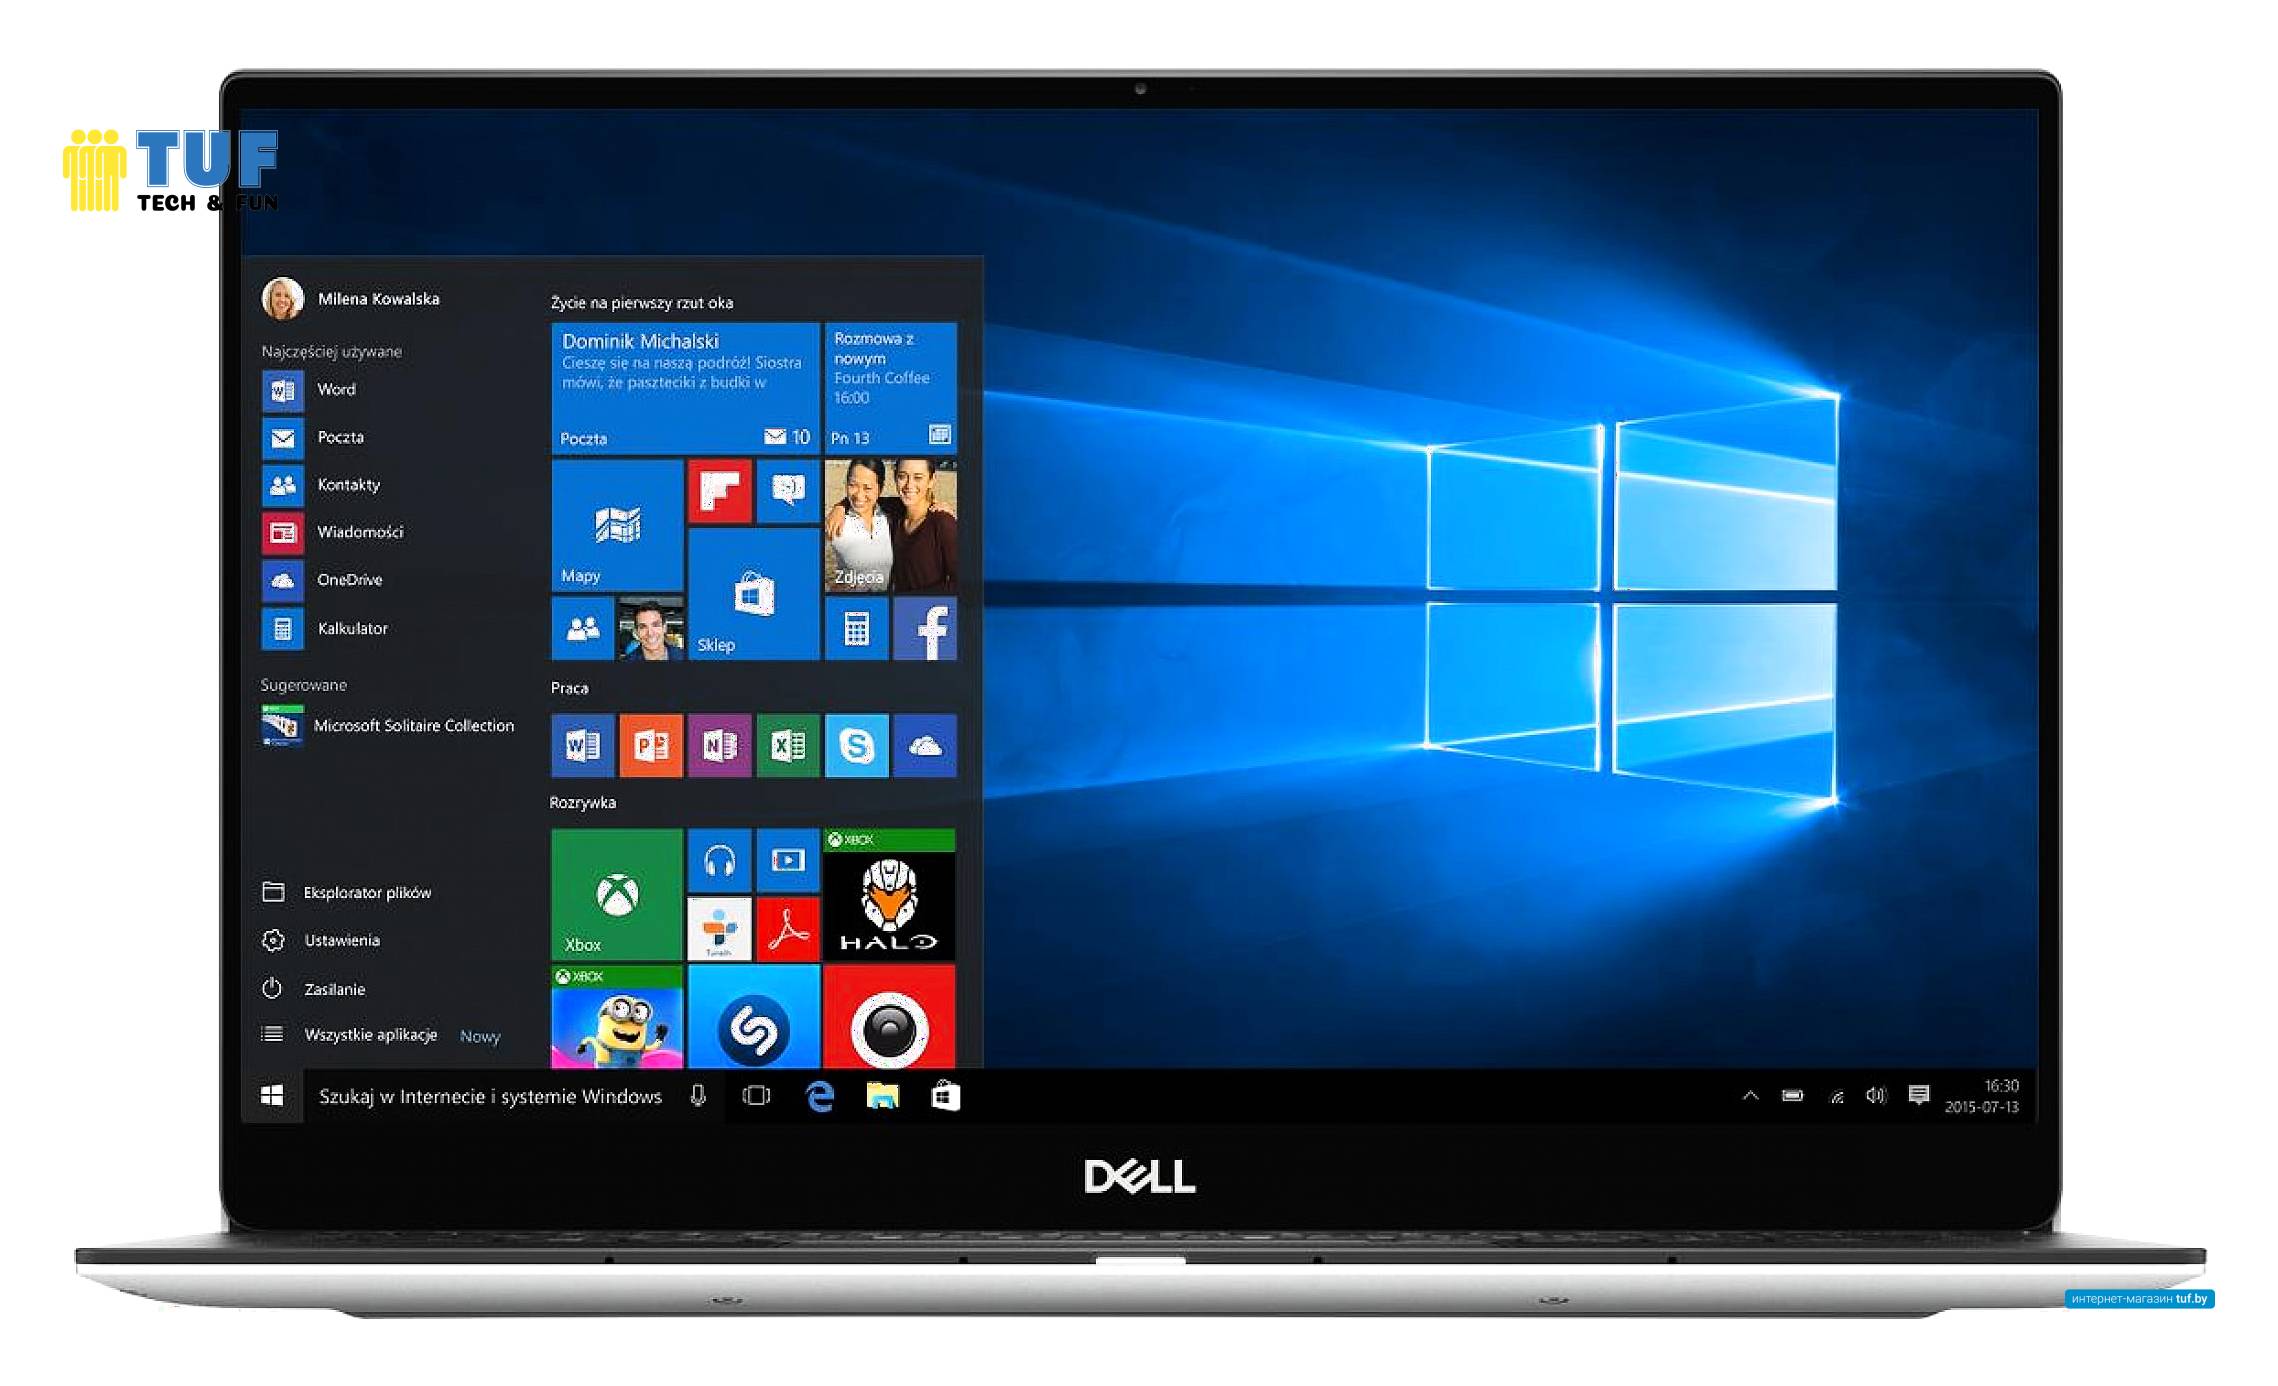 Ноутбук Dell XPS 13 9305-6305